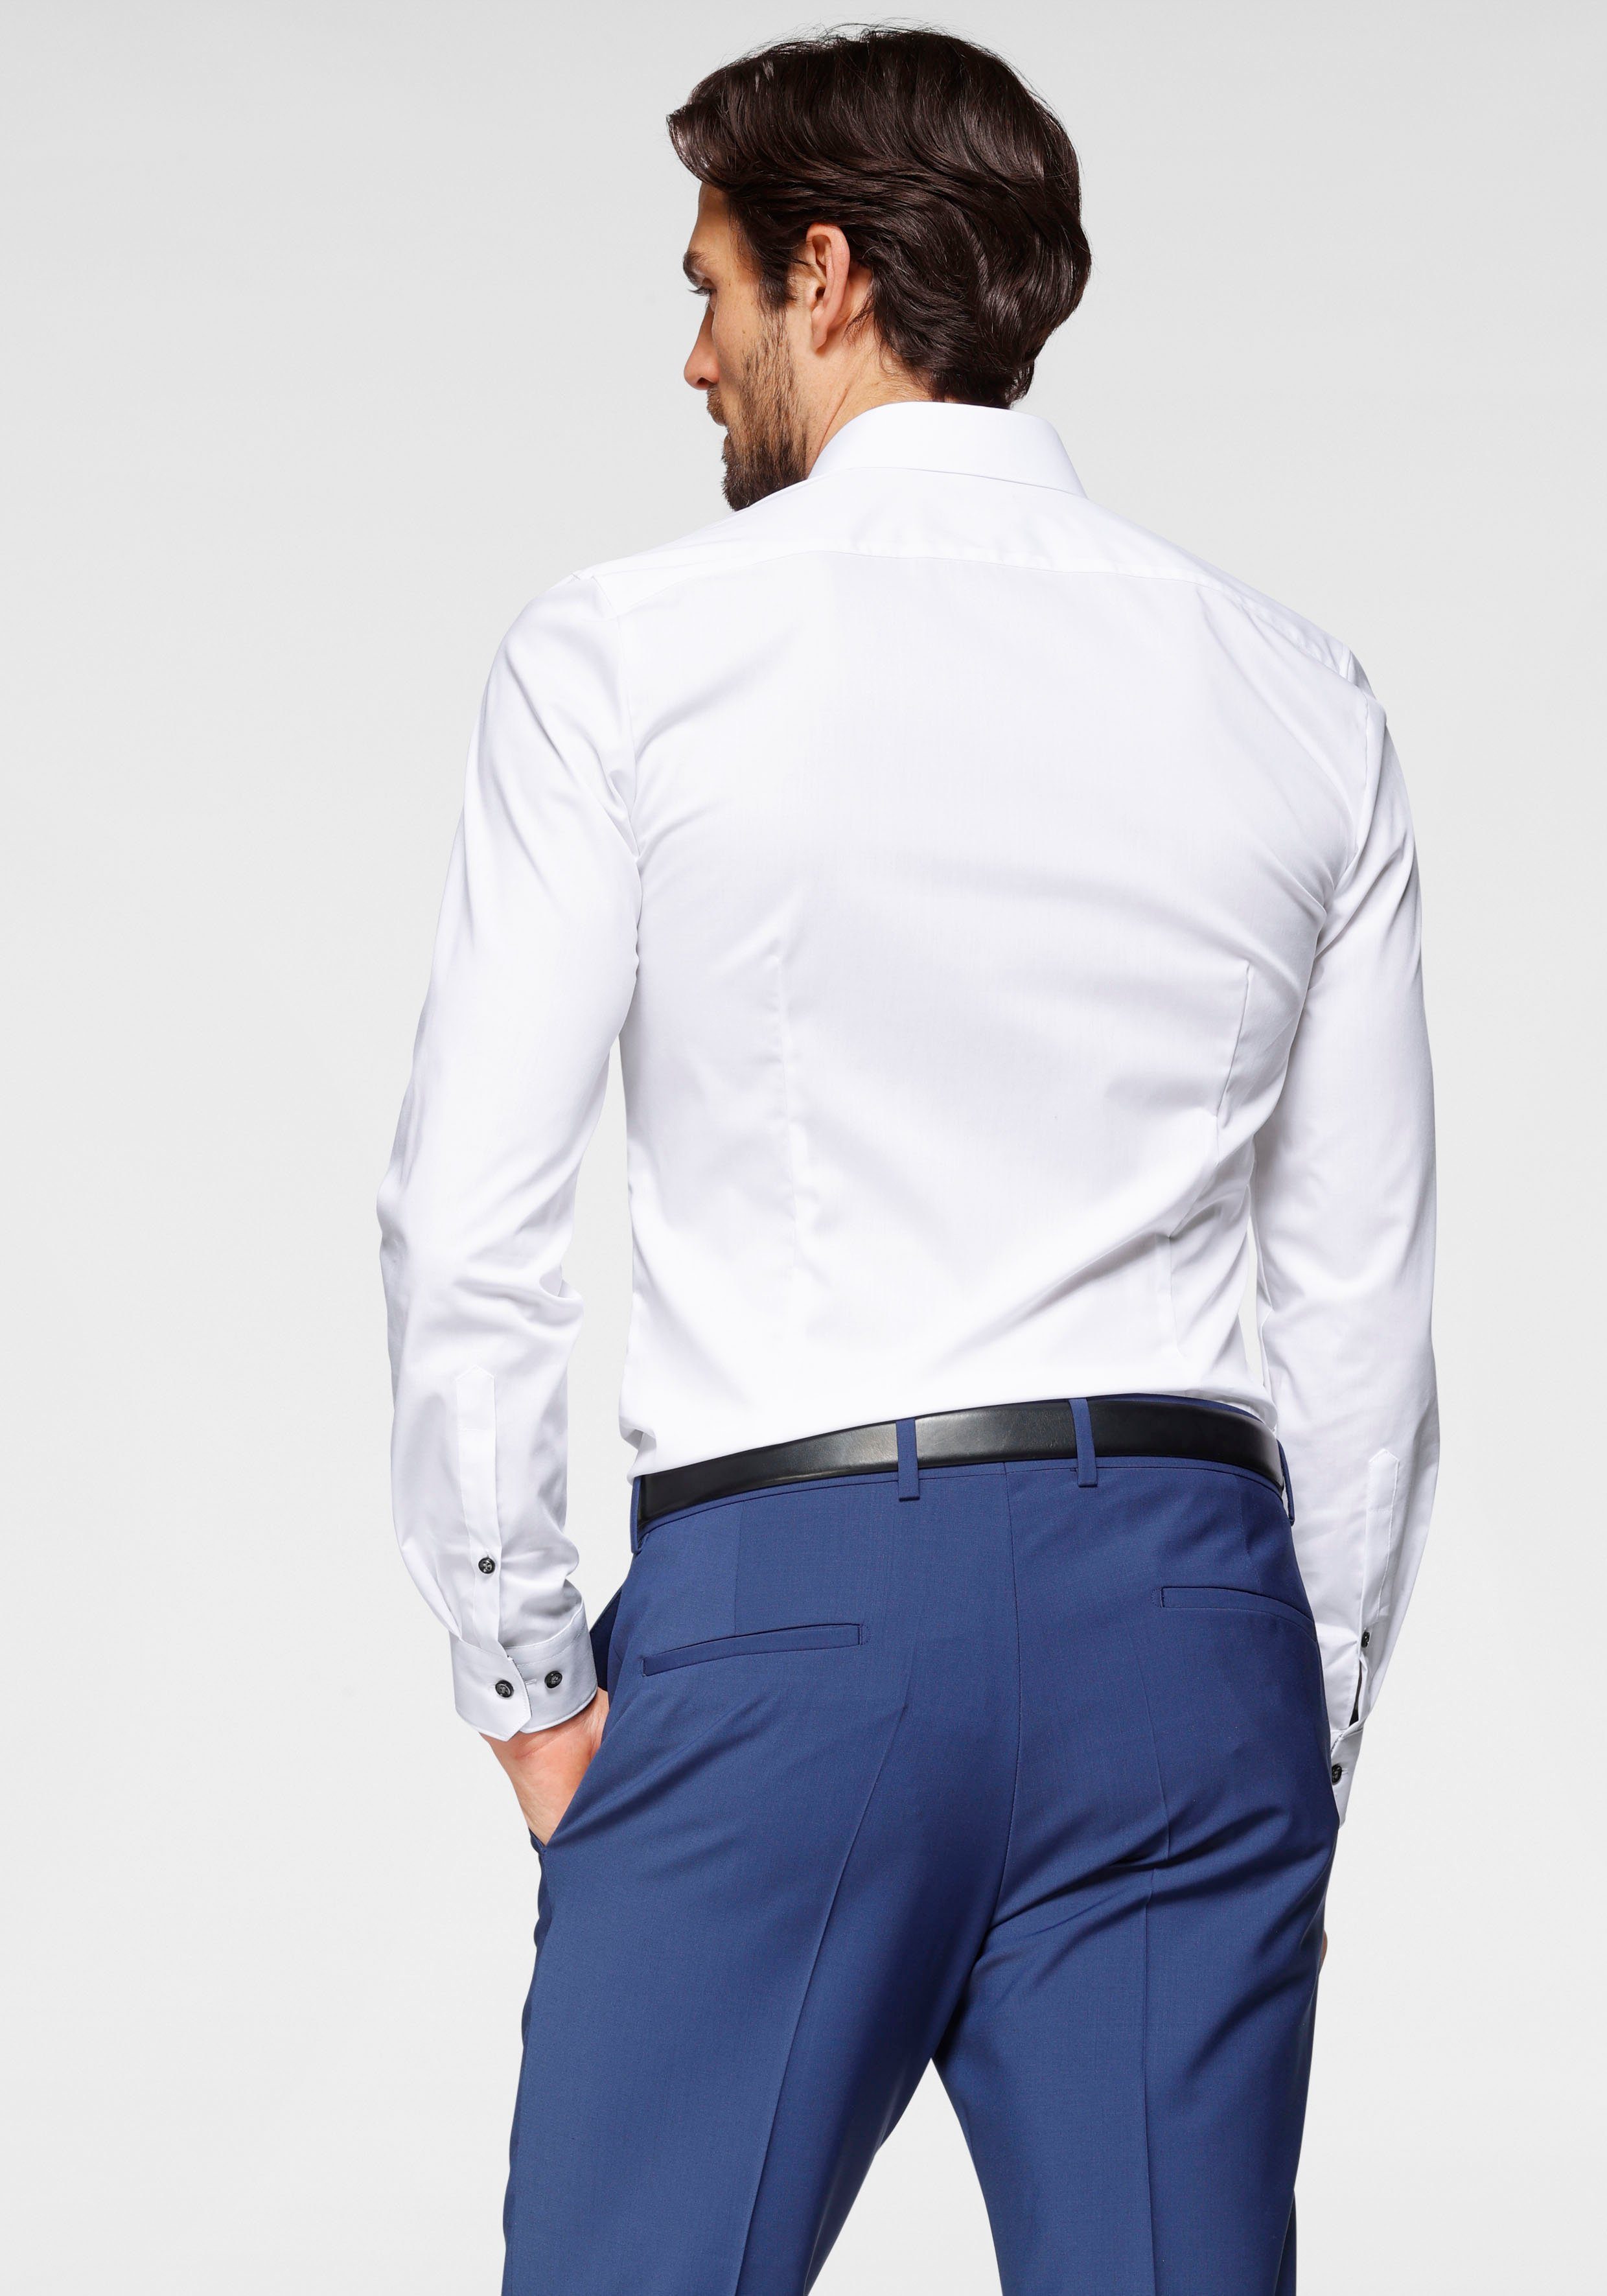 Six Comfort OLYMP slim Stretch, super weiß-anthrazit-kontrastfarbene Details No. Businesshemd slim, super bügelleicht